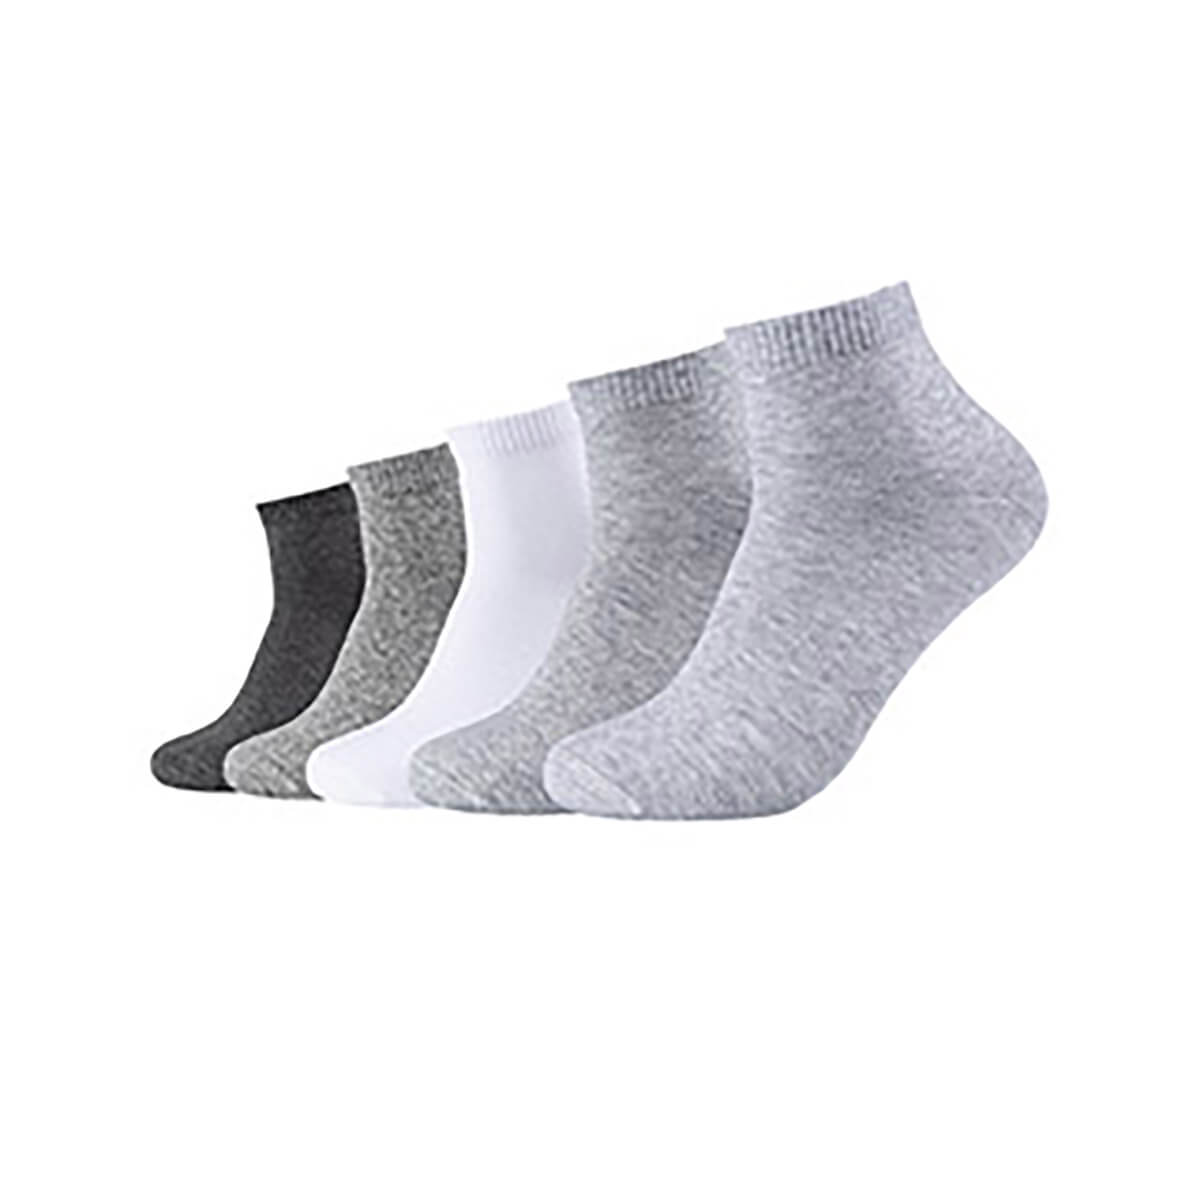 ▷ s.Oliver multipack quarter socks gray & white – Sockstock®